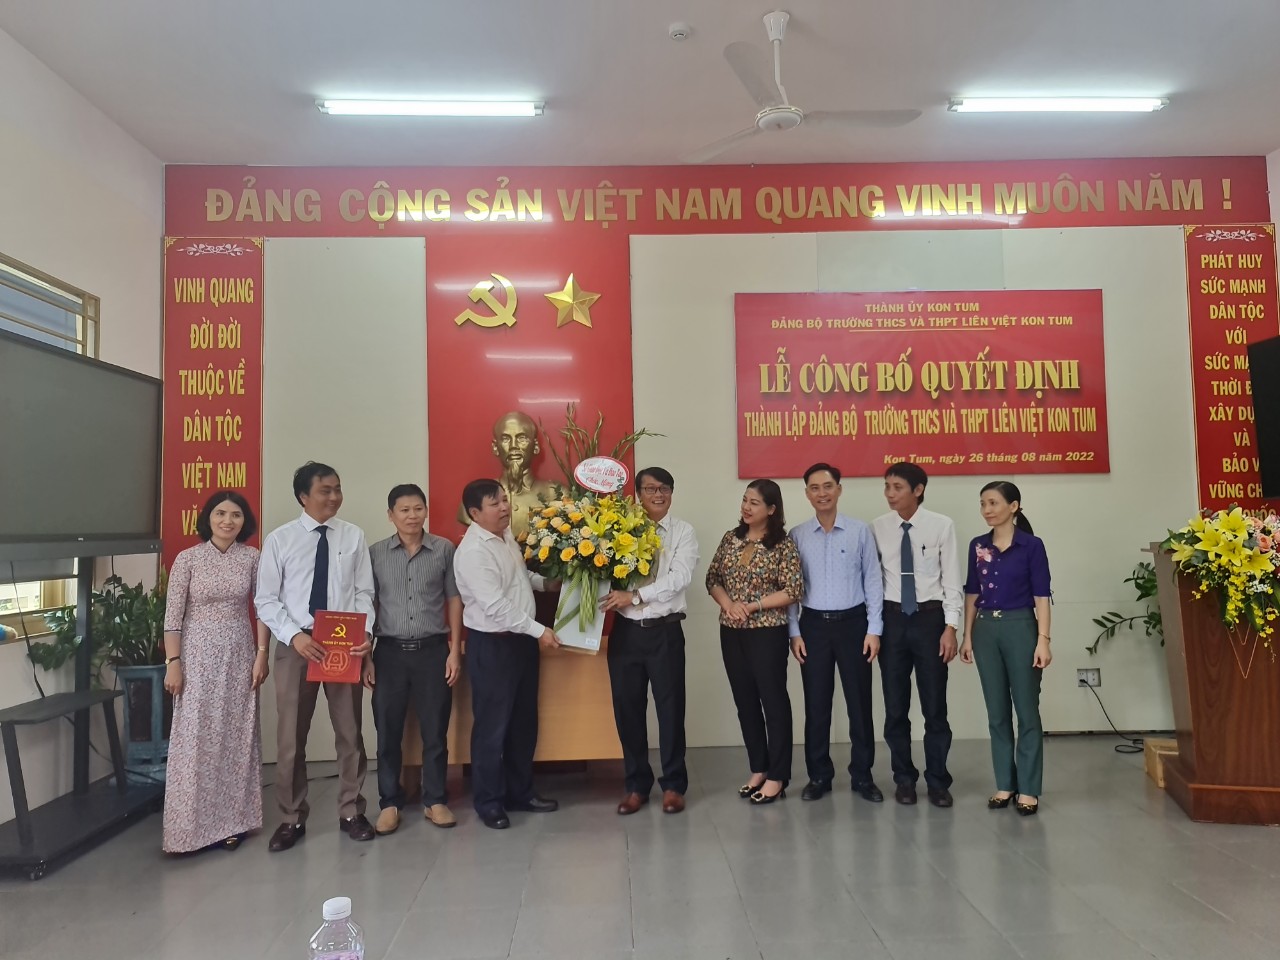 Lễ công bố Quyết định thành lập Đảng bộ Trường THCS và THPT Liên Việt Kon Tum